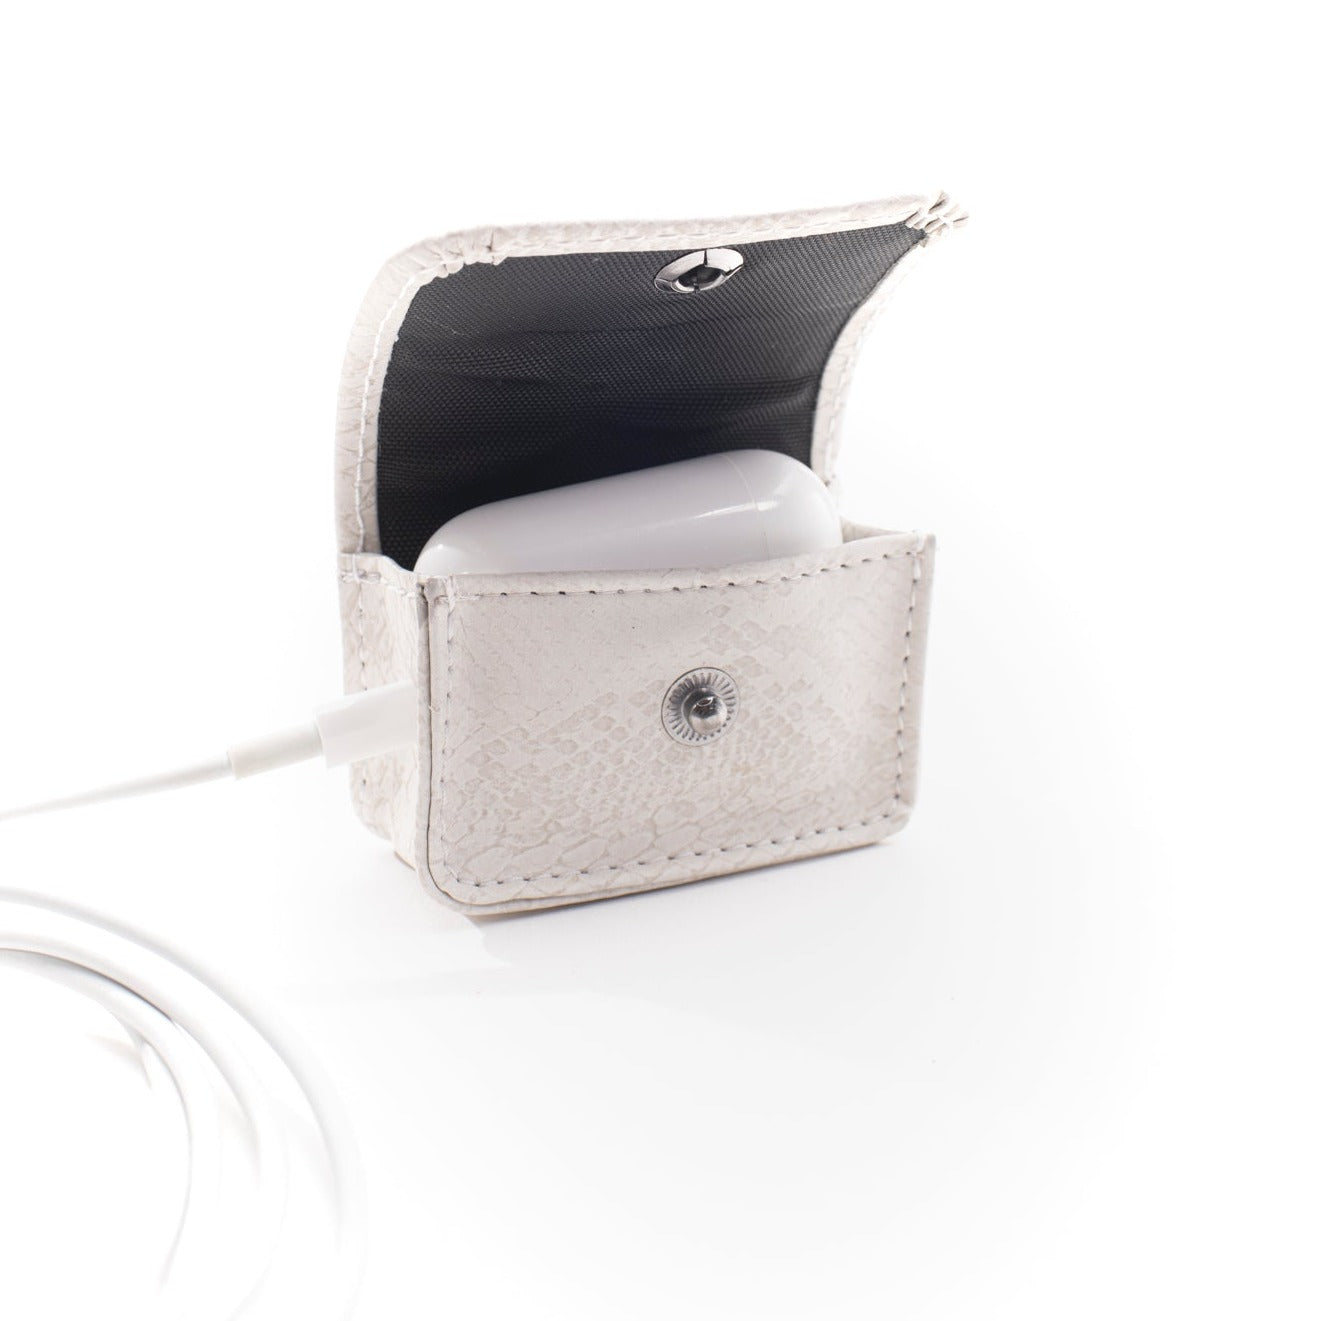 Earbud Pro Case - Ivory (white) Faux Snake - Gunmetal Toned Hardware